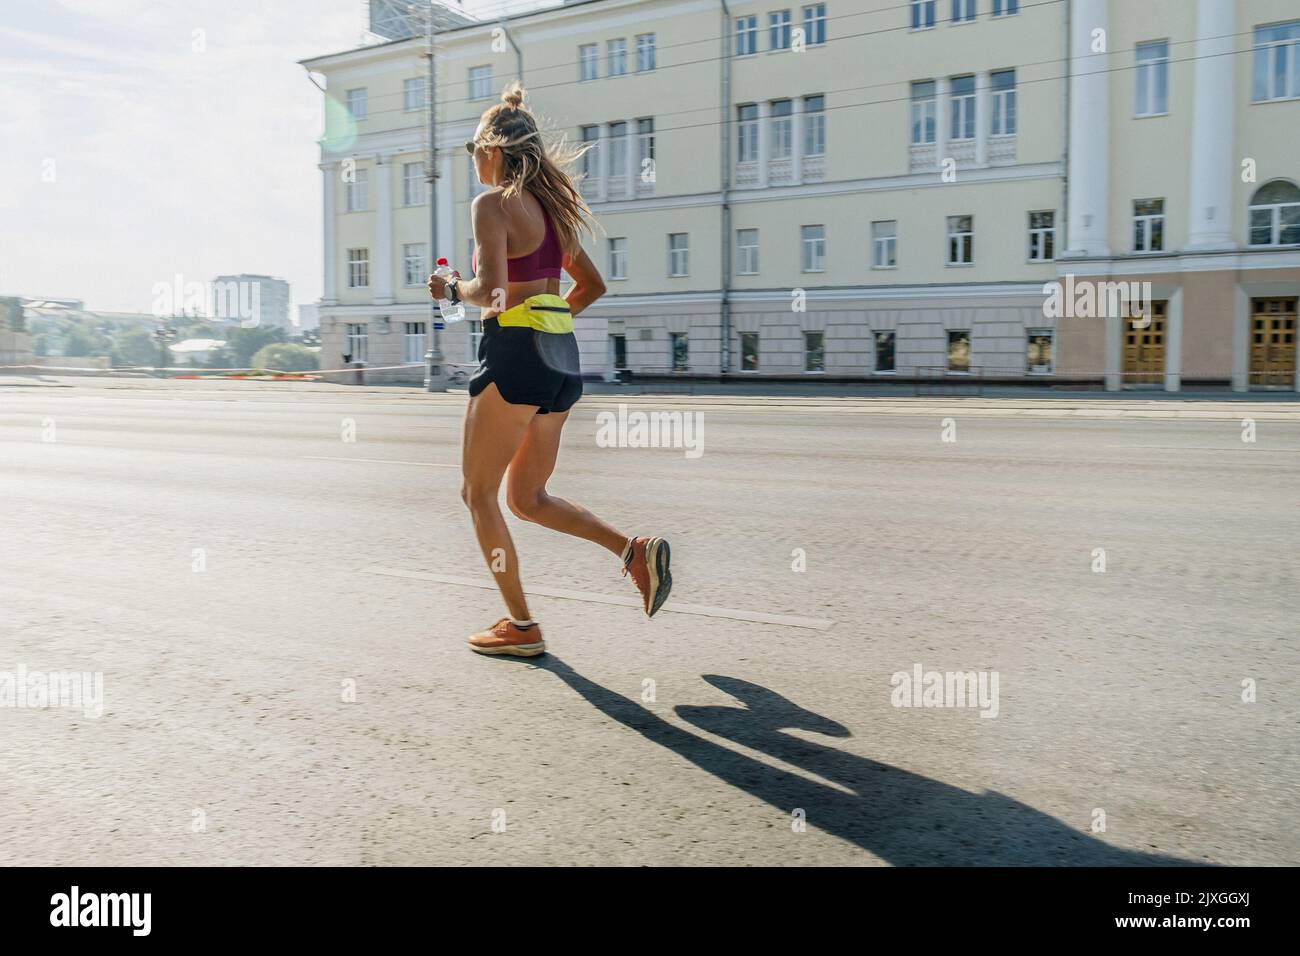 female runner running in morning on city street Stock Photo